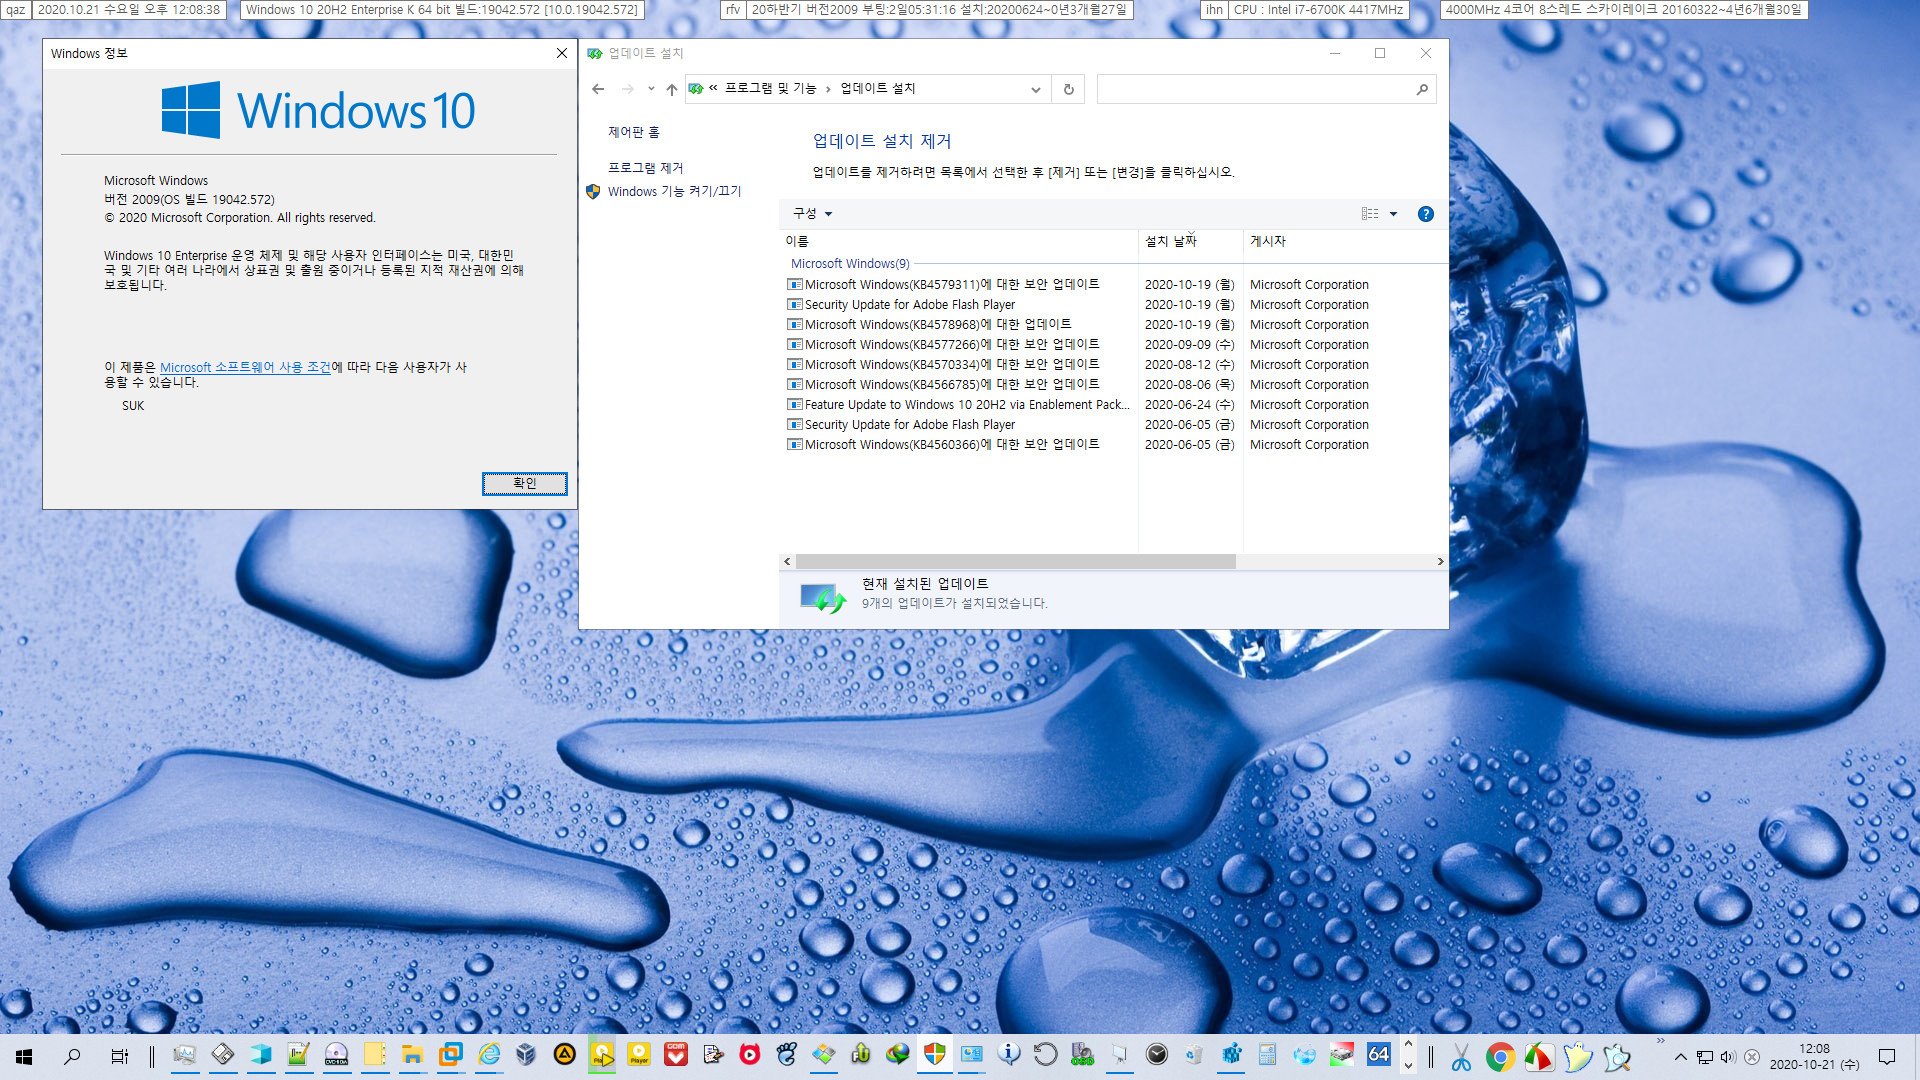 Windows 10 버전 2009 (20H2) 정식 출시되었네요 - 아직 인사이더 프리뷰 때의 버전 20H2로 표시되어서 직접 정식 버전 2009으로 표시되도록 했습니다 - 실컴 윈도우에 적용 2020-10-21_120838.jpg